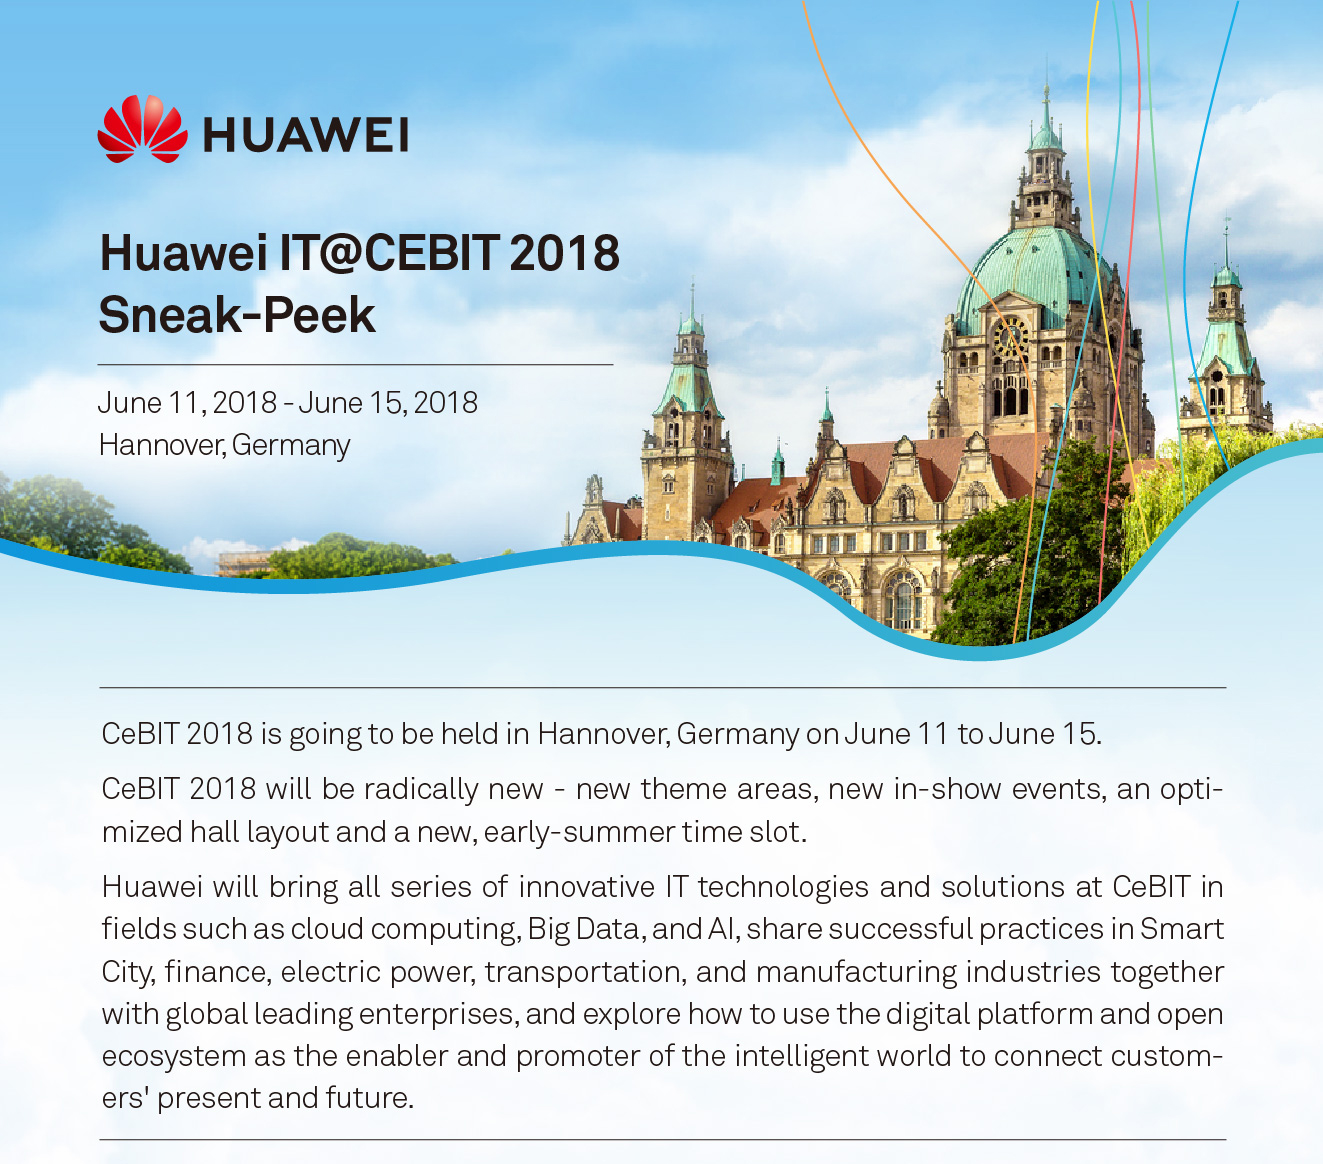 Huawei IT@CEBIT 2018 Sneak-Peak